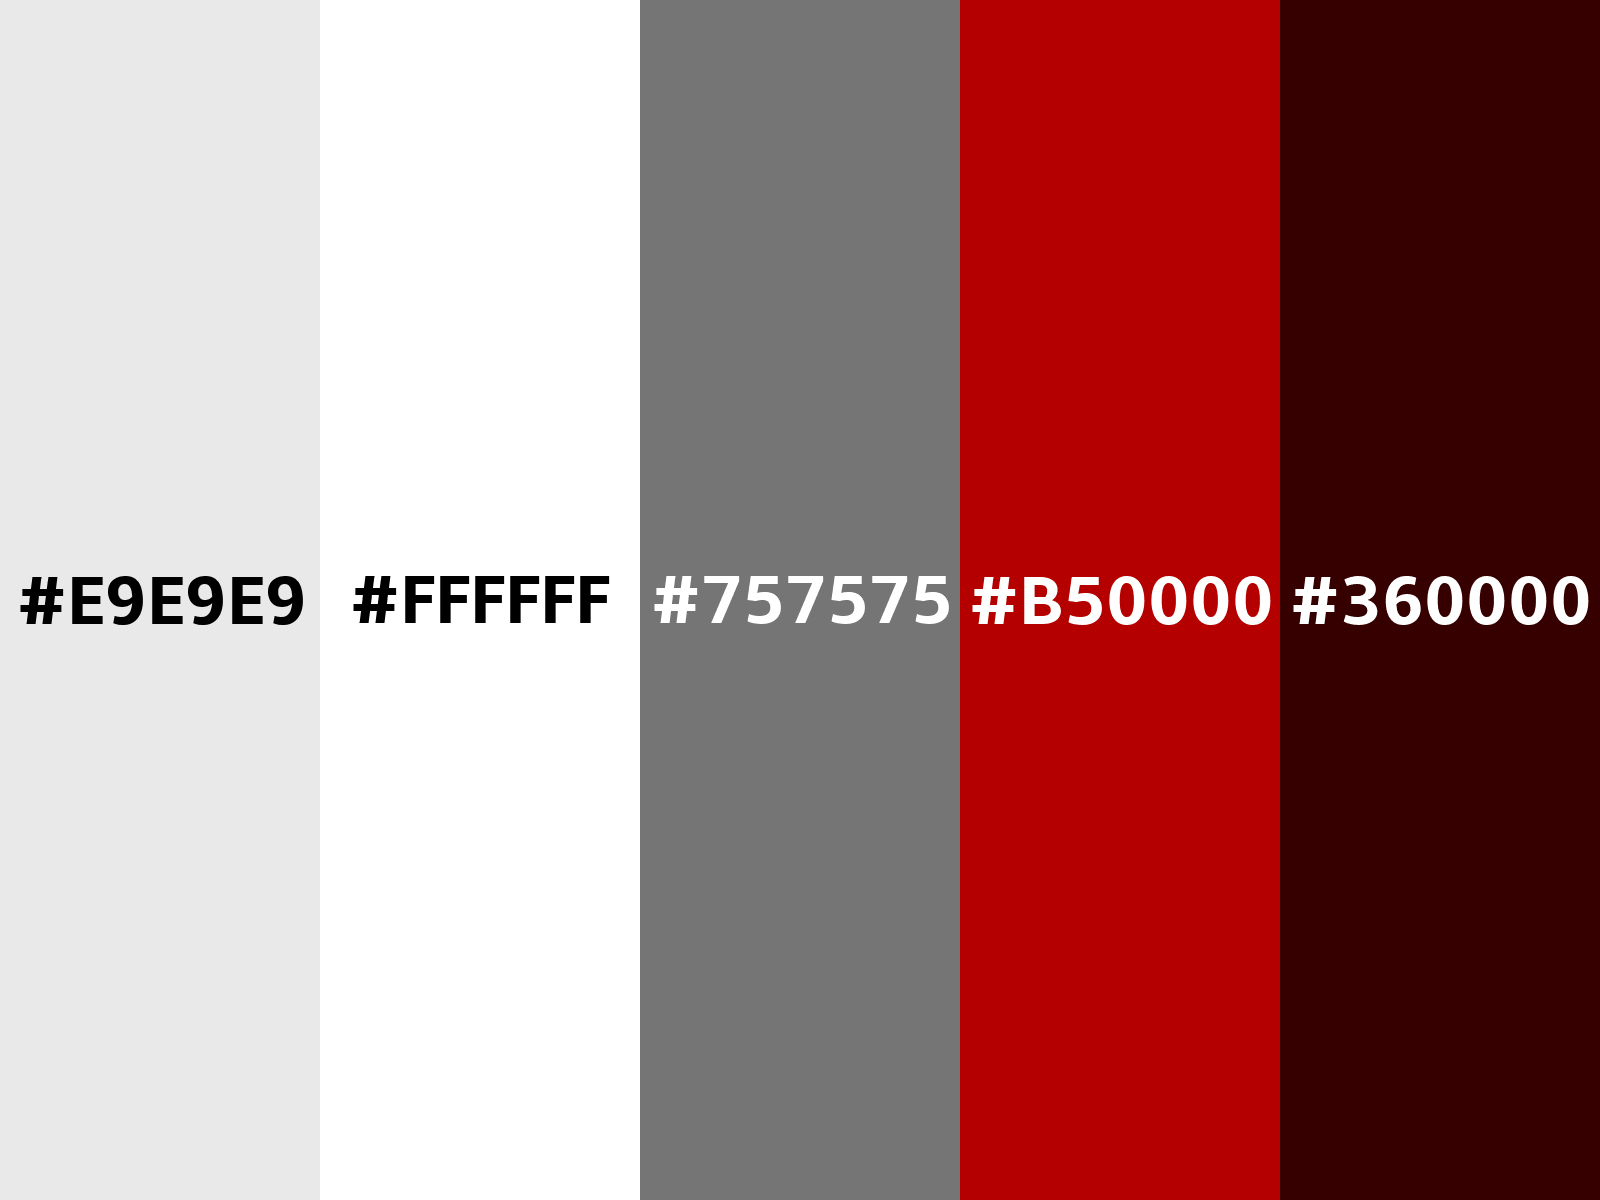 D7E2E9 Hex Color, RGB: 215, 226, 233